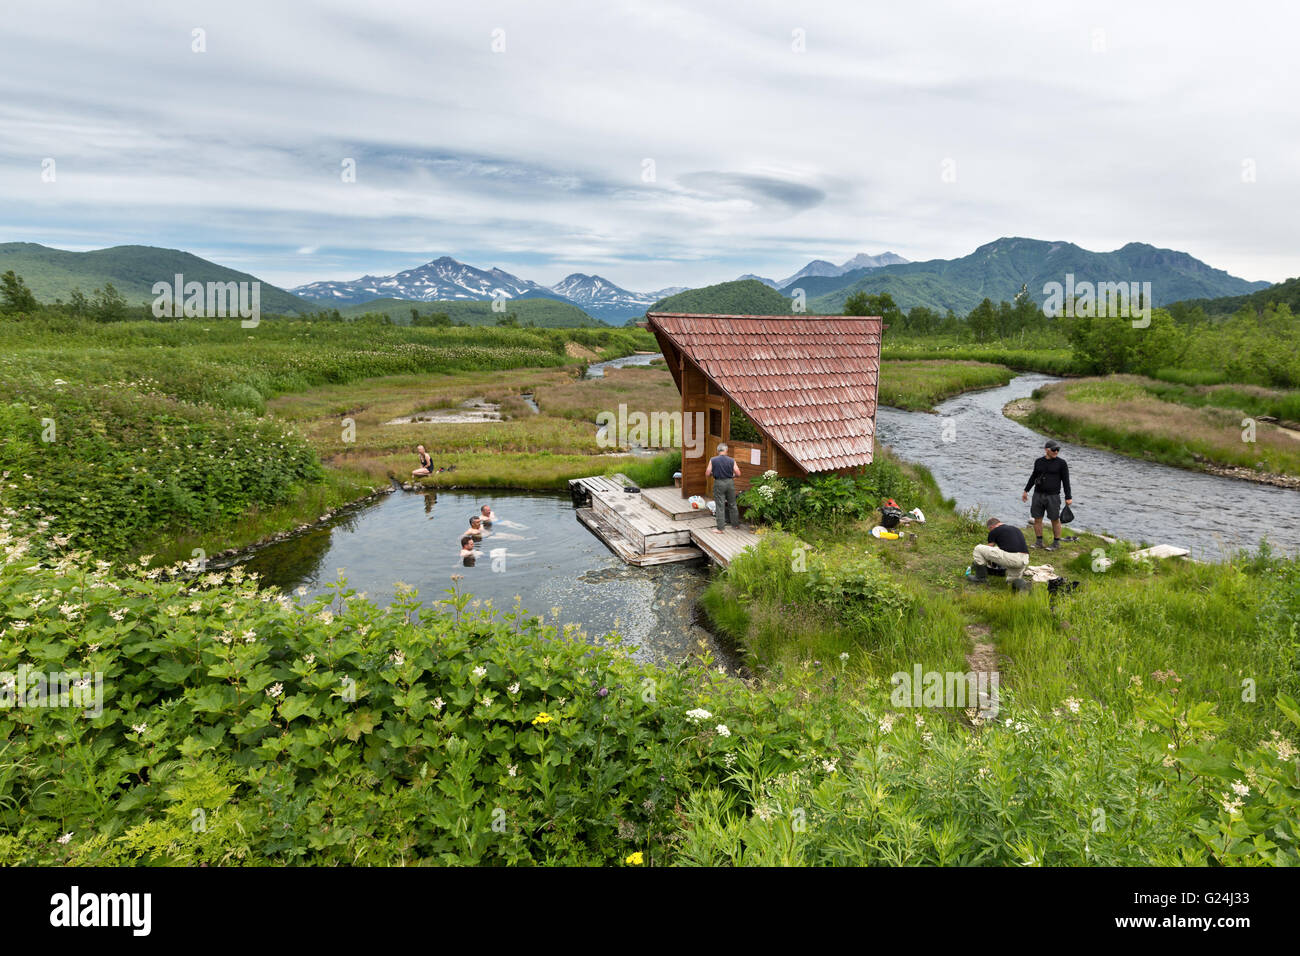 Penisola di Kamchatka: sorgenti calde in natura Nalychevo Park, turisti nuotare nella piscina naturale piscine termali. Estremo Oriente russo. Foto Stock